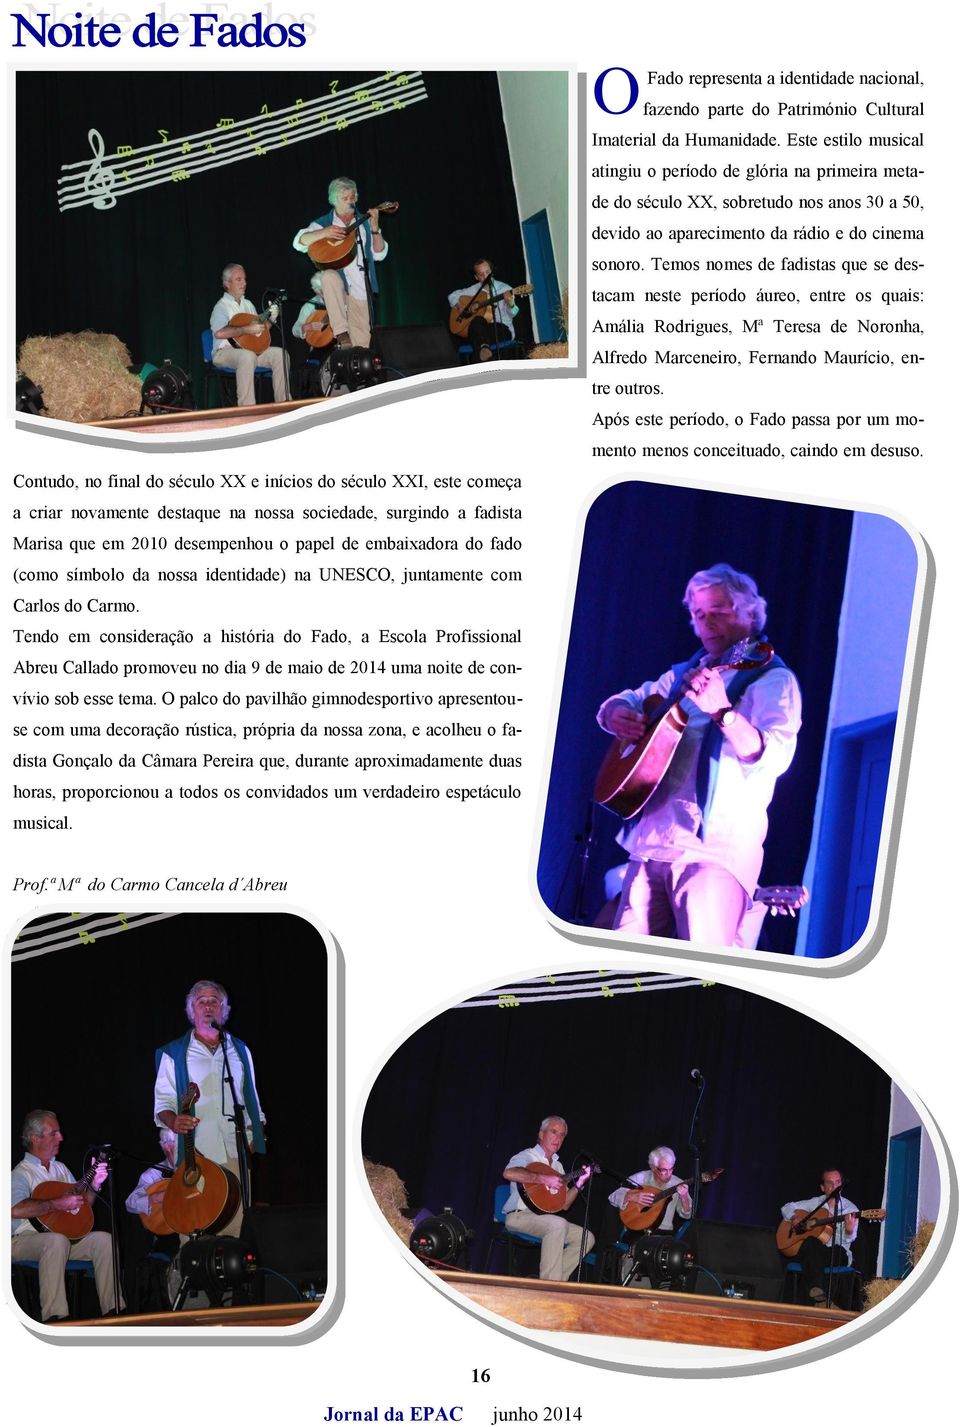 Tendo em consideração a história do Fado, a Escola Profissional Abreu Callado promoveu no dia 9 de maio de 2014 uma noite de convívio sob esse tema.